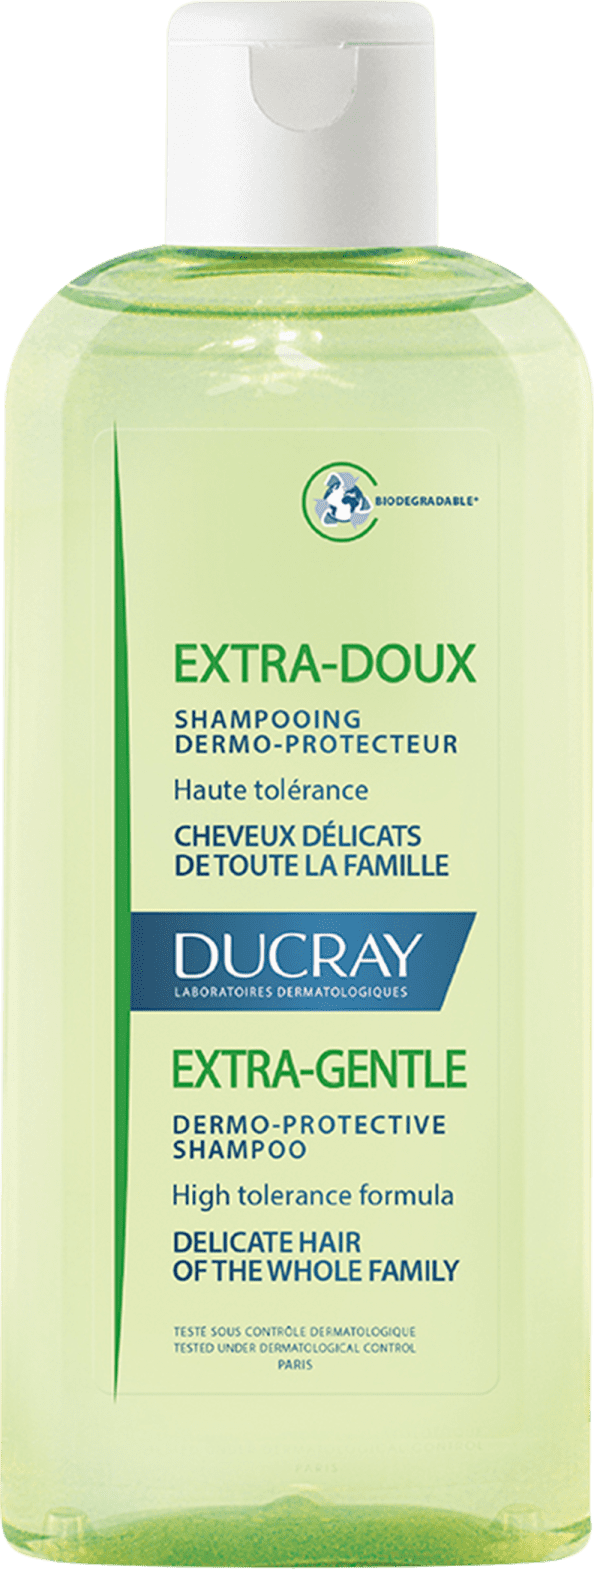 ducray doux szampon 200 ml